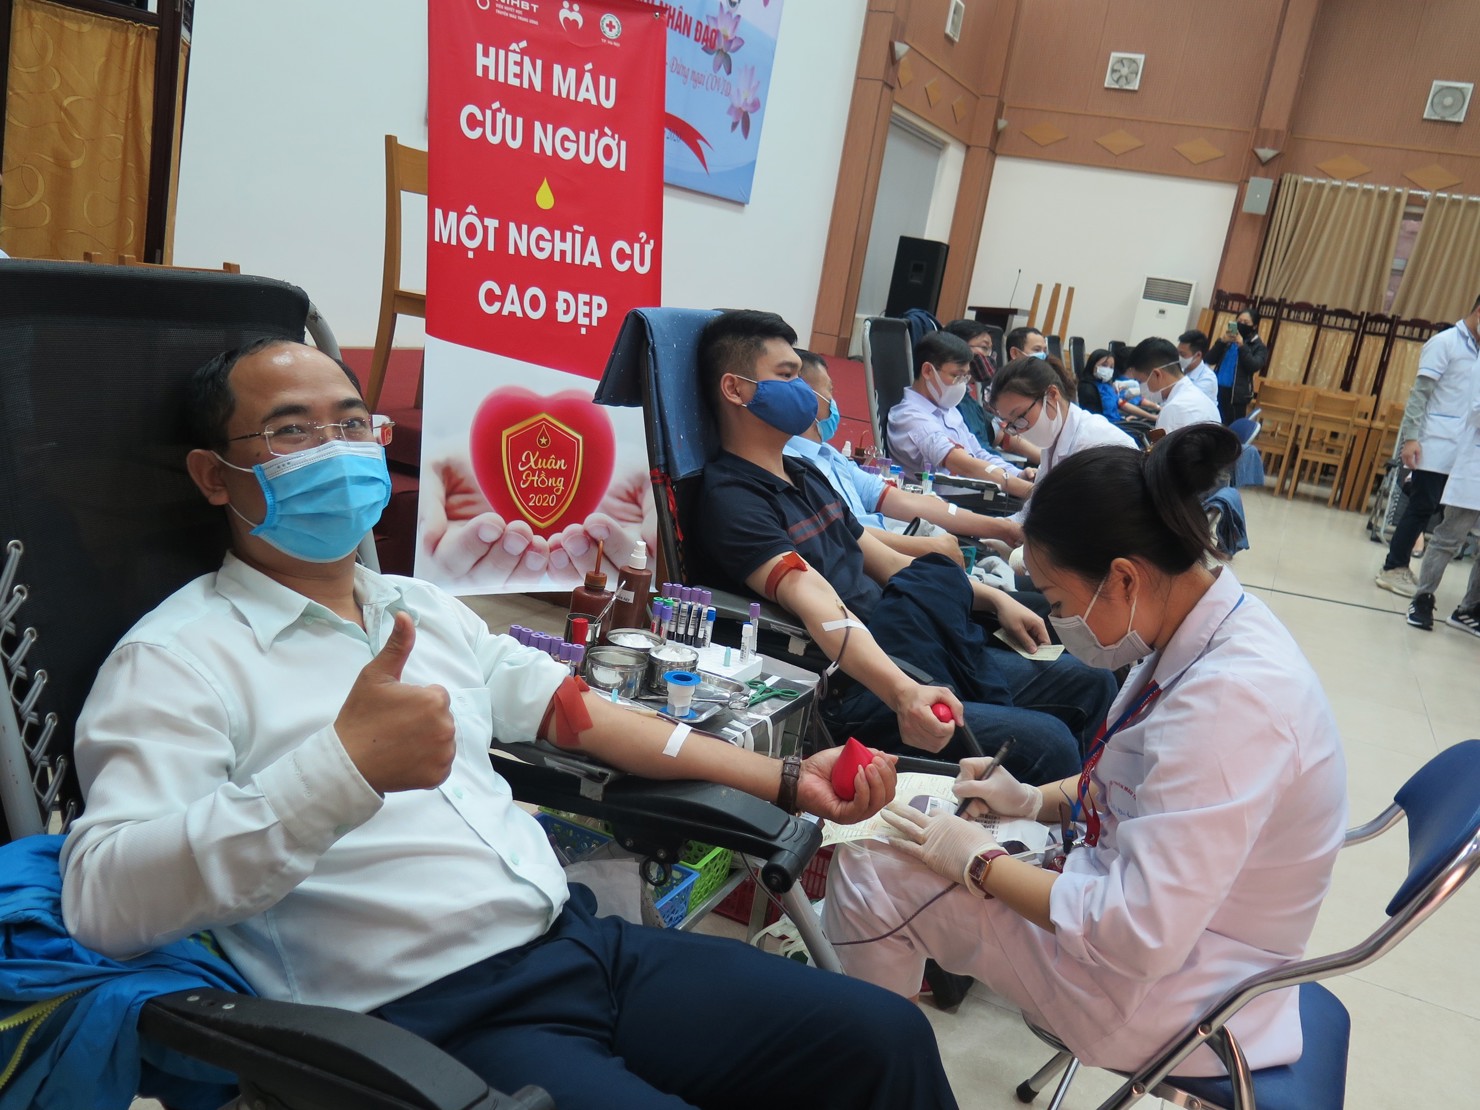 Kết thúc chương trình hiến máu tình nguyện đã có 174 đơn vị máu của đoàn viên Công đoàn Cơ quan BHXH Việt Nam được tiếp nhận và chuyển về Viện Huyết học - Truyền máu Trung ương.